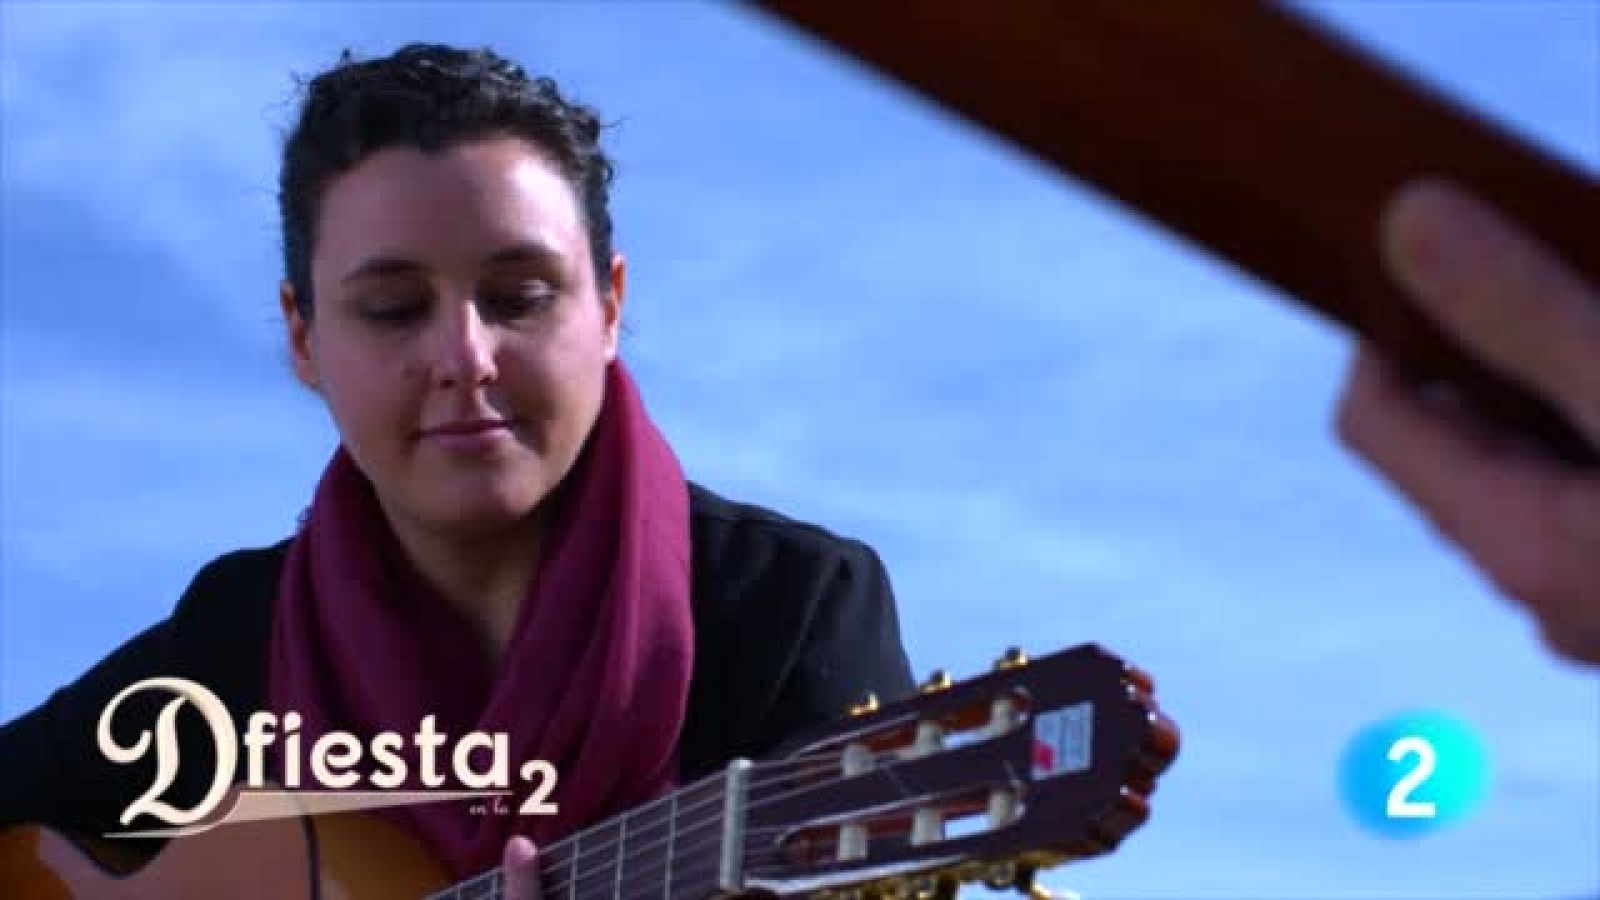 Dfiesta en La 2: Bonica cantan "Quiero verte feliz" | RTVE Play